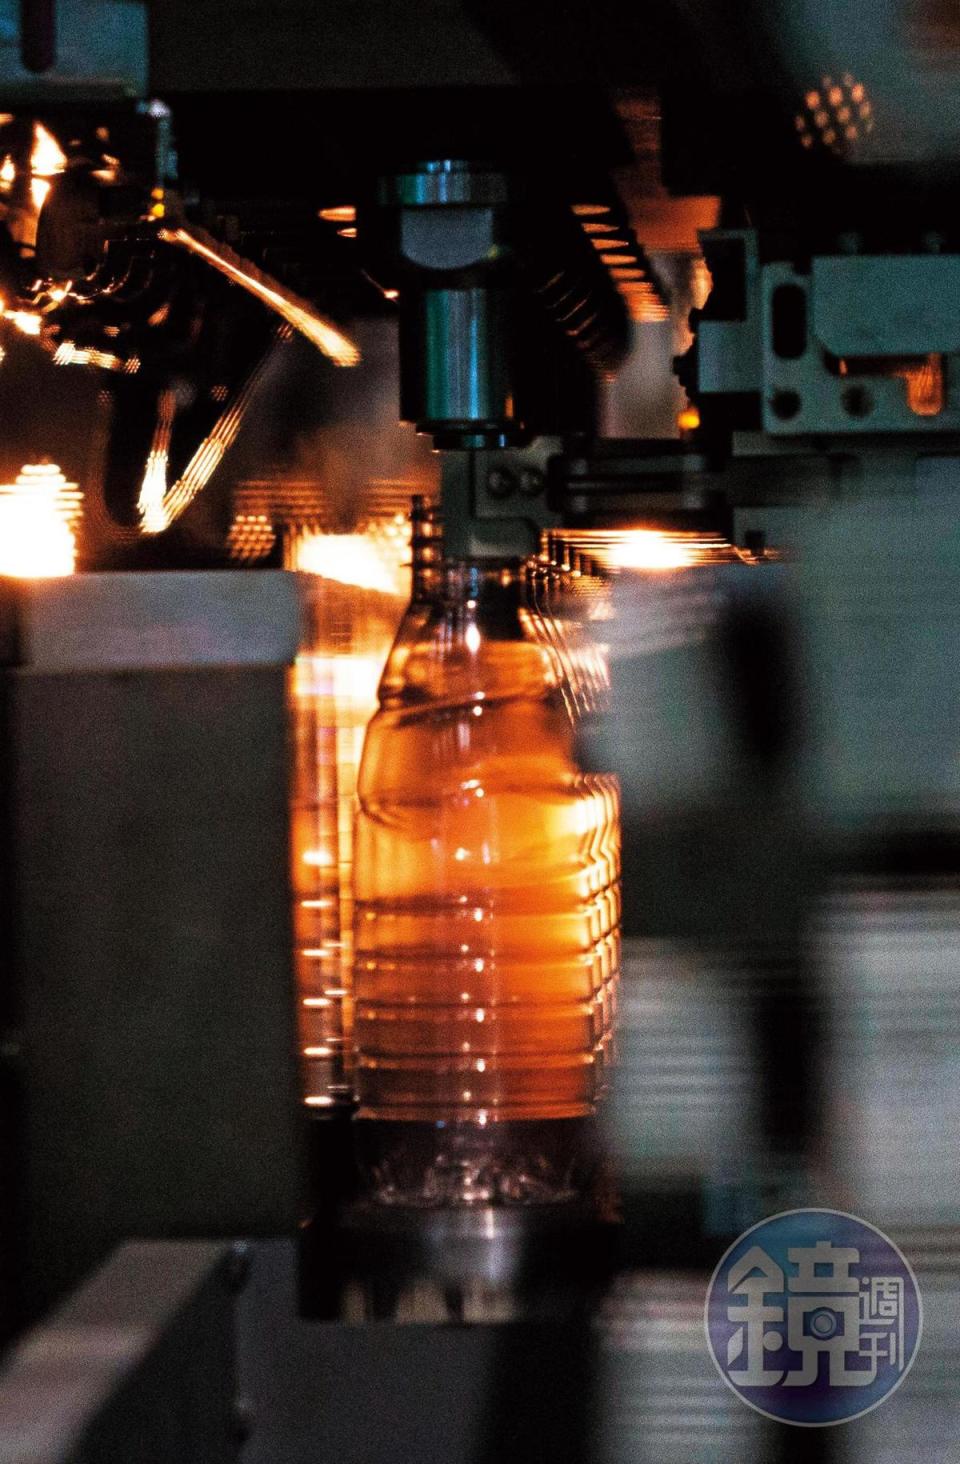 市售飲料的瓶子一般為PET材質，加熱會軟化、冷卻時固化。製作過程中，瓶胚在模具裡經加熱、拉伸，變成寶特瓶的形狀。